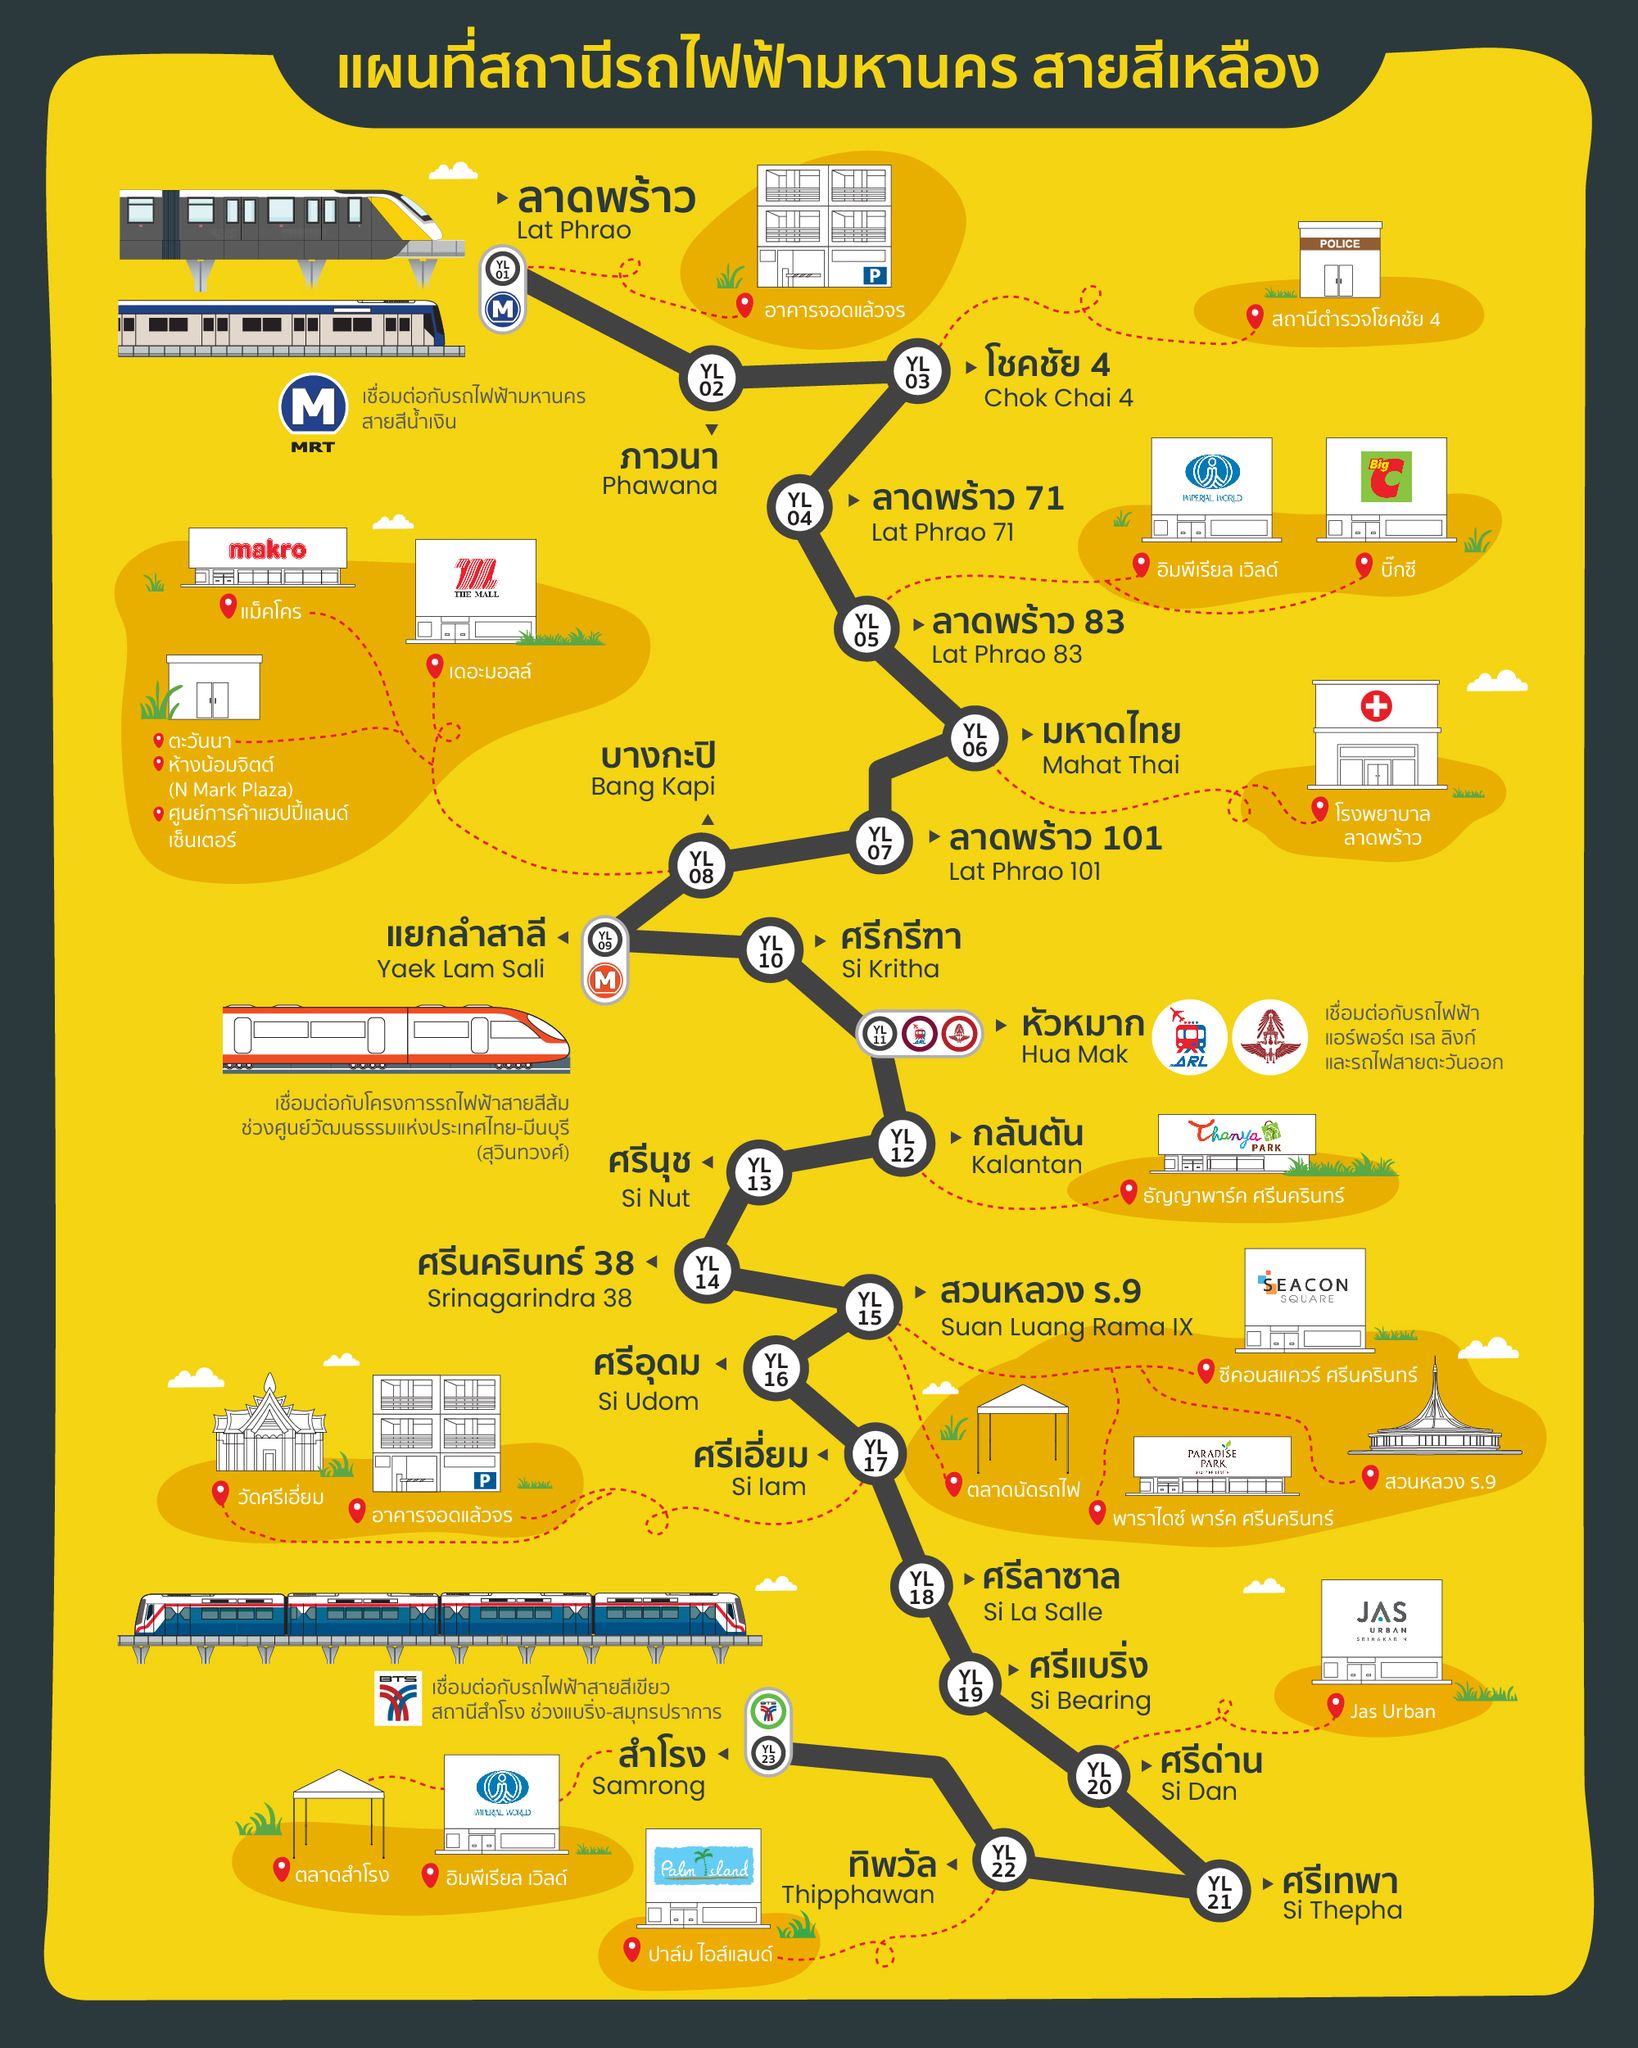 เปิดราคา ค่าโดยสารรถไฟฟ้าสายสีเหลือง Mrt ครบทั้ง 23 สถานี | Thaiger ข่าวไทย